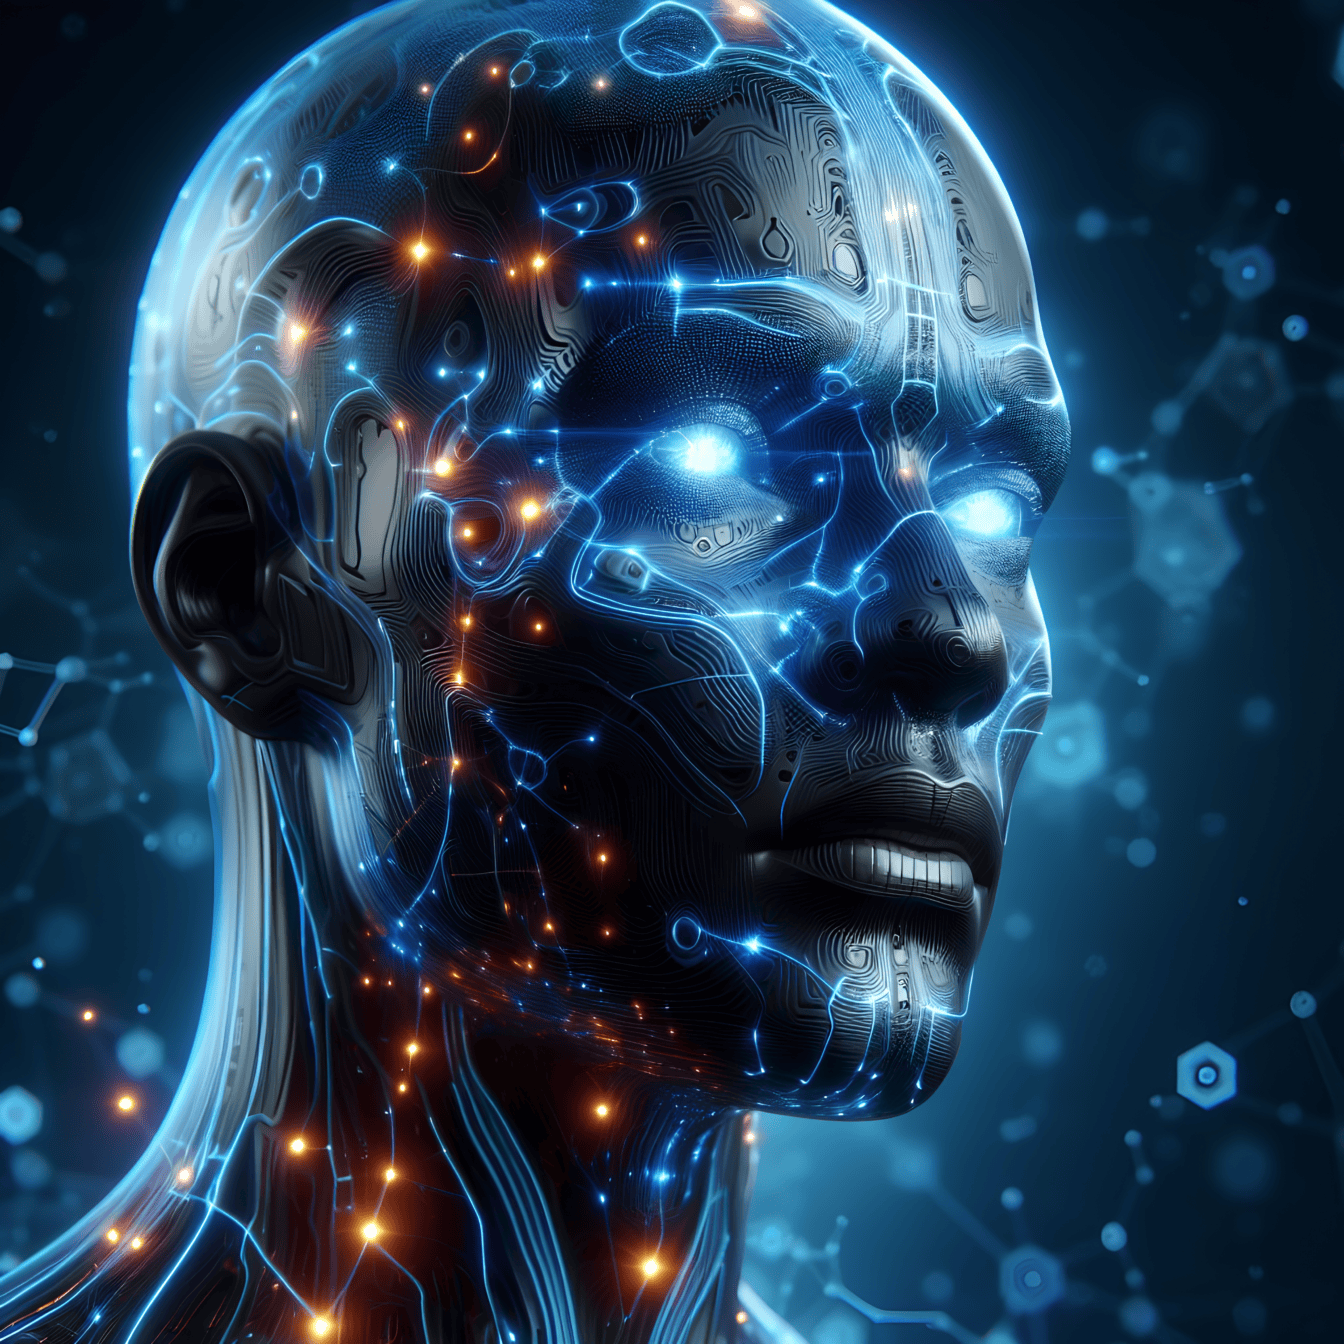 Grafika przedstawiająca głowę humanoidalnego robota-cyborga ze sztuczną inteligencją w stylu wirtualnej rzeczywistości